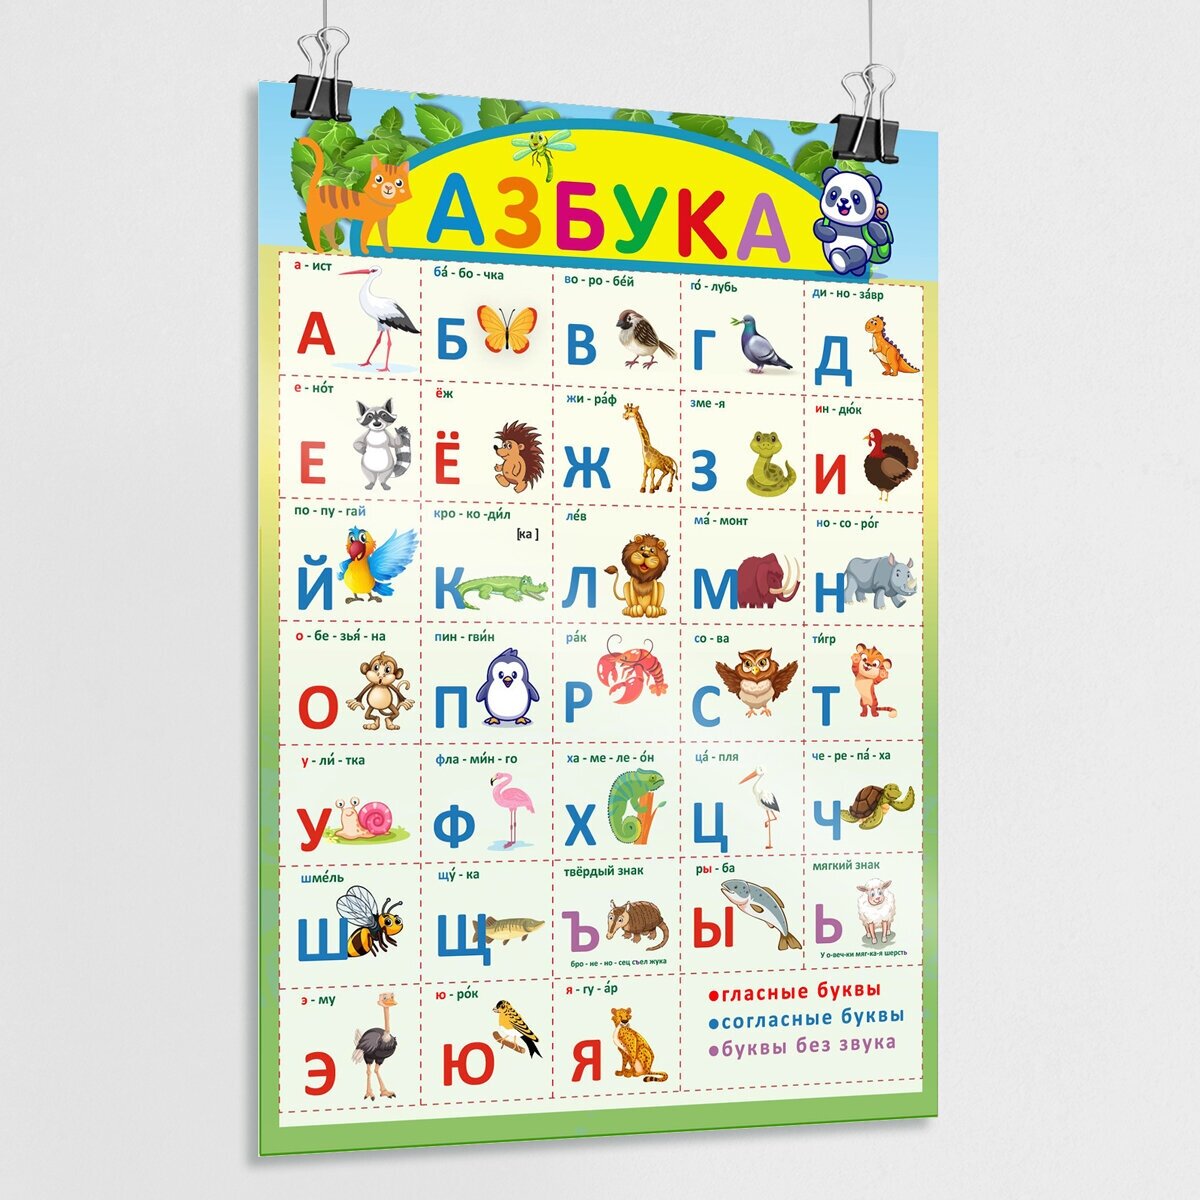 Обучающий плакат "Азбука" для детей / Алфавит для малышей / А-3 (30x42 см.)